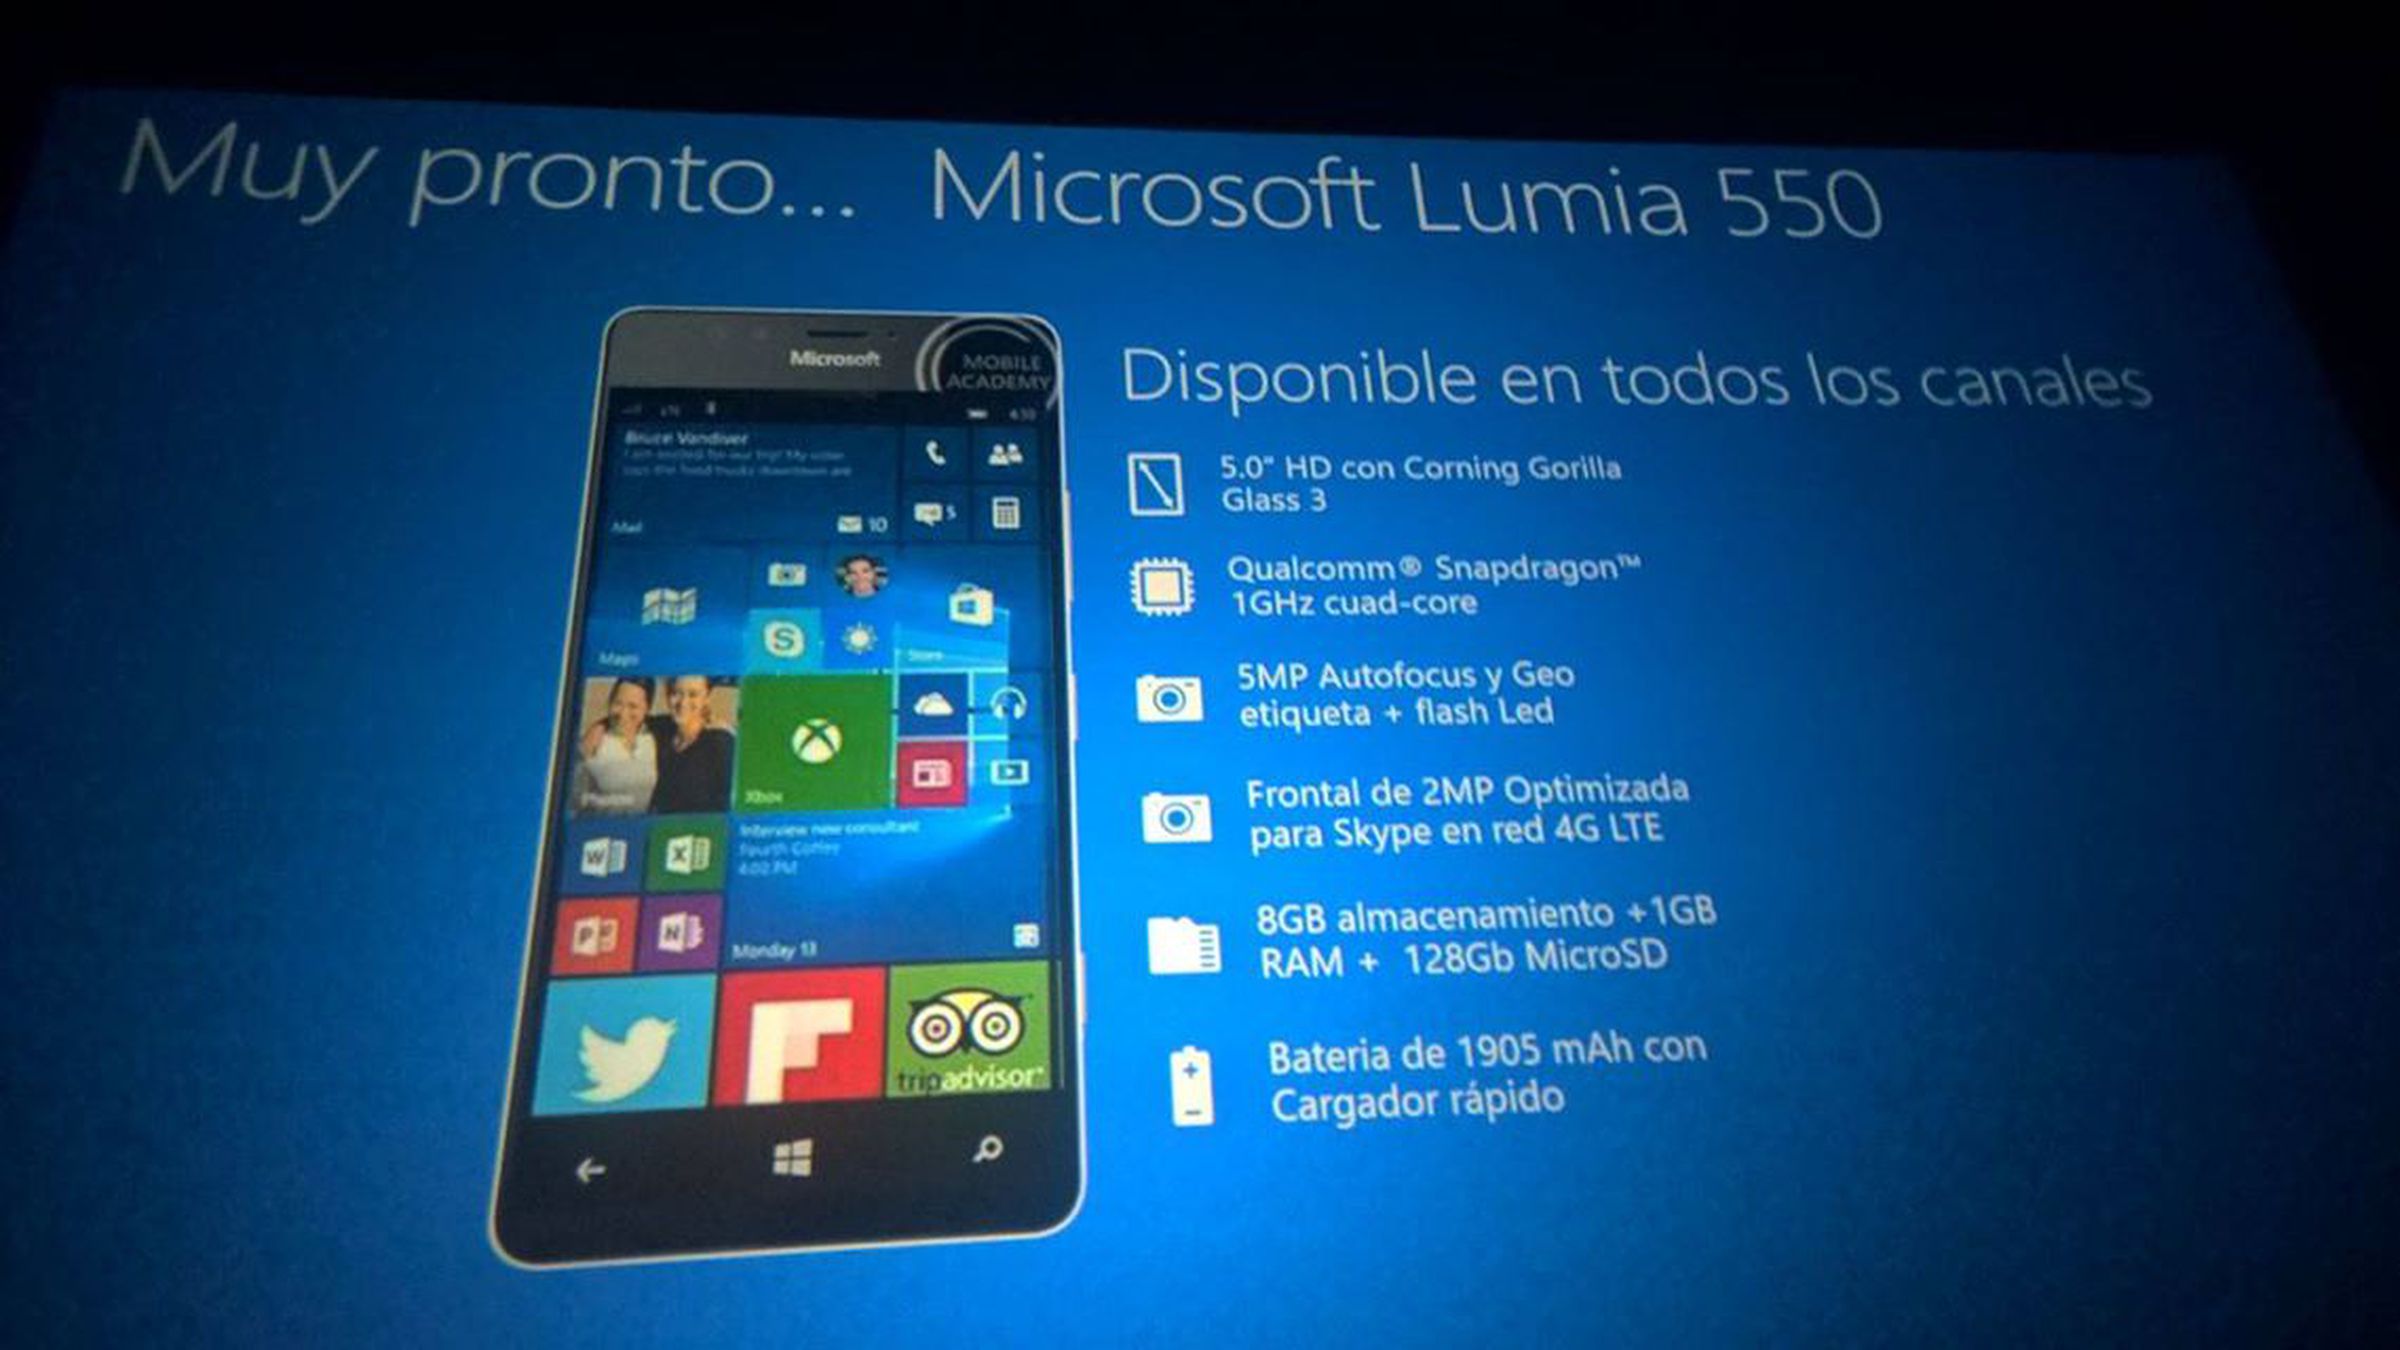 Lumia 550, Lumia 950, and Lumia 950 XL leaked slides